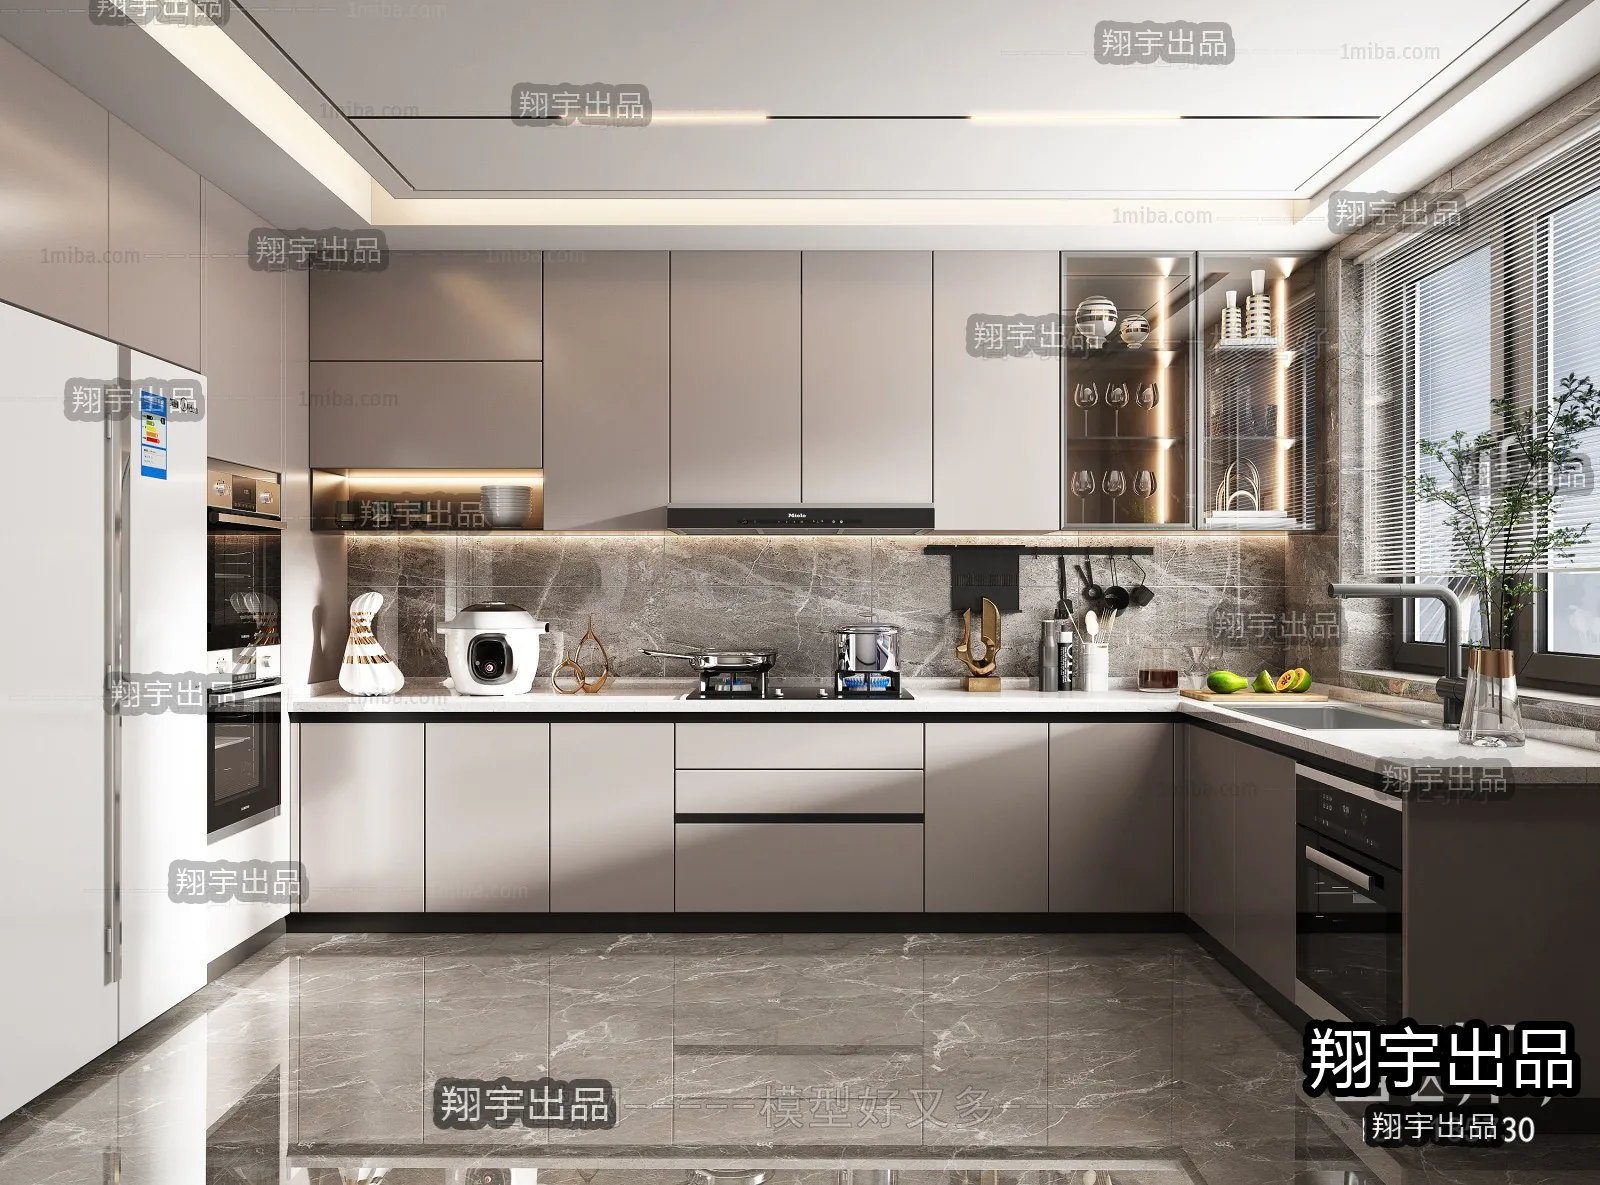 Kitchen – Modern Interior Design – 3D Models – 006